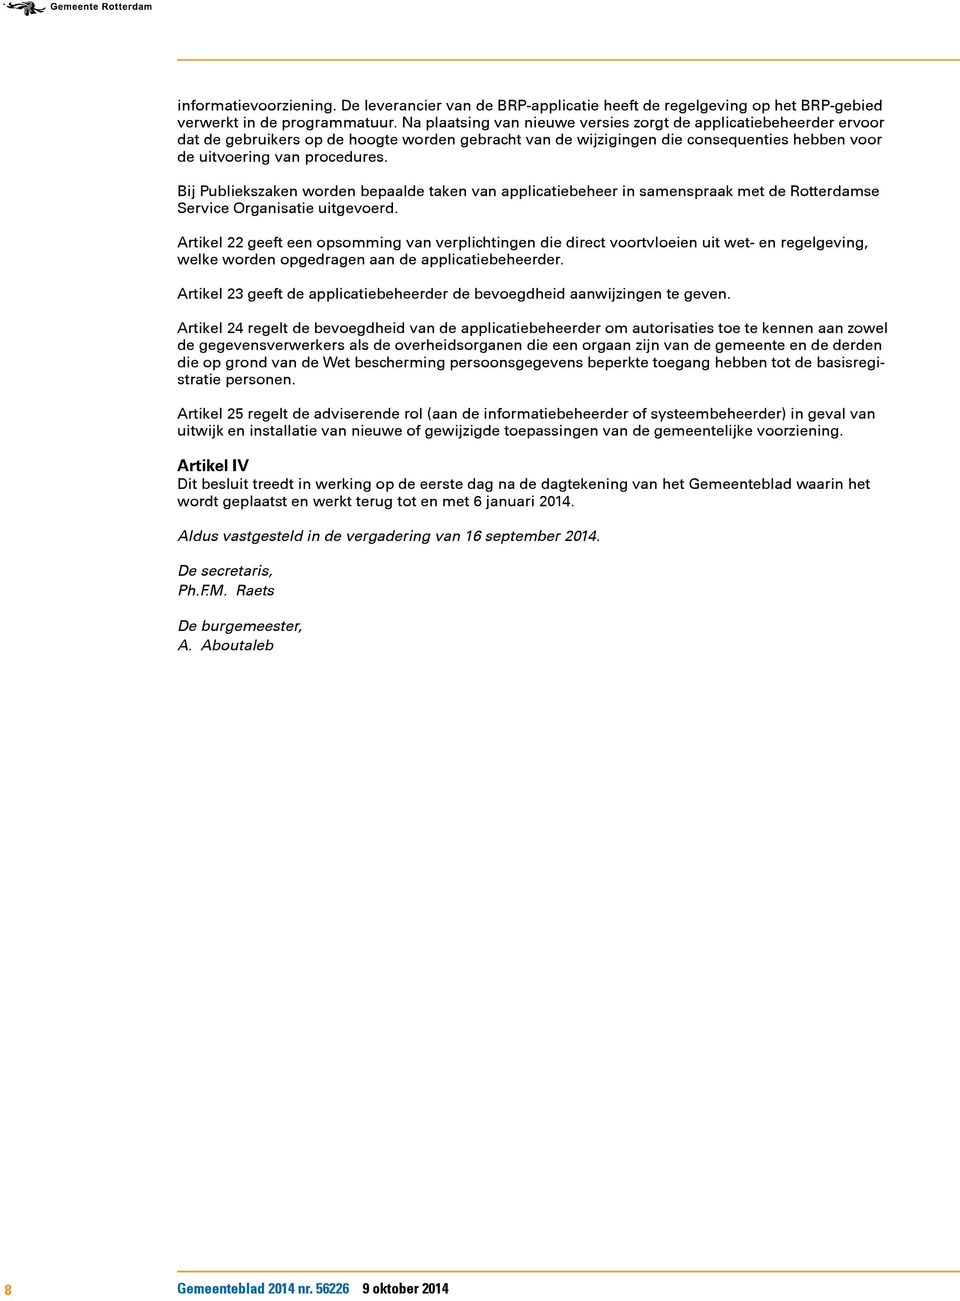 Bij Publiekszaken worden bepaalde taken van applicatiebeheer in samenspraak met de Rotterdamse Service Organisatie uitgevoerd.